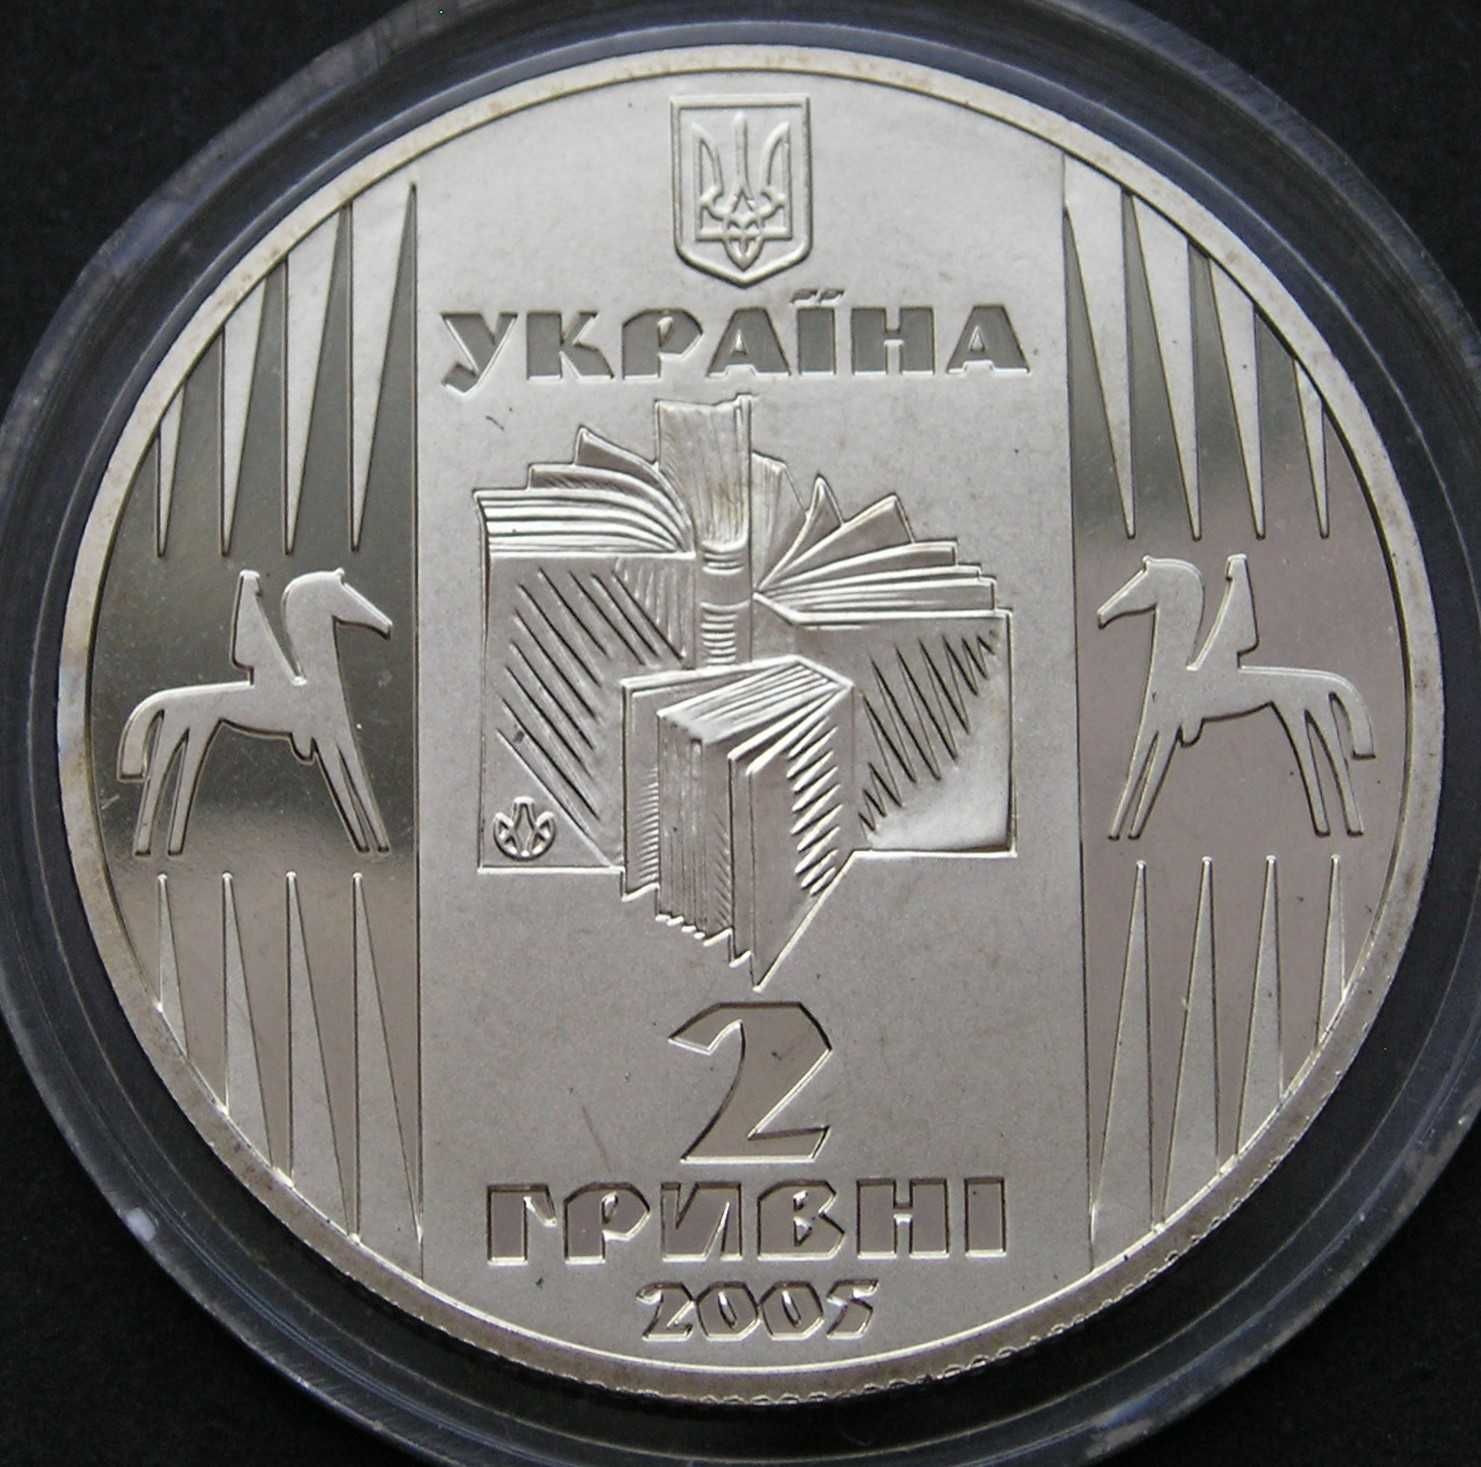 Ukraina 2 hrywny 2005 - Samczuk - stan 1/2